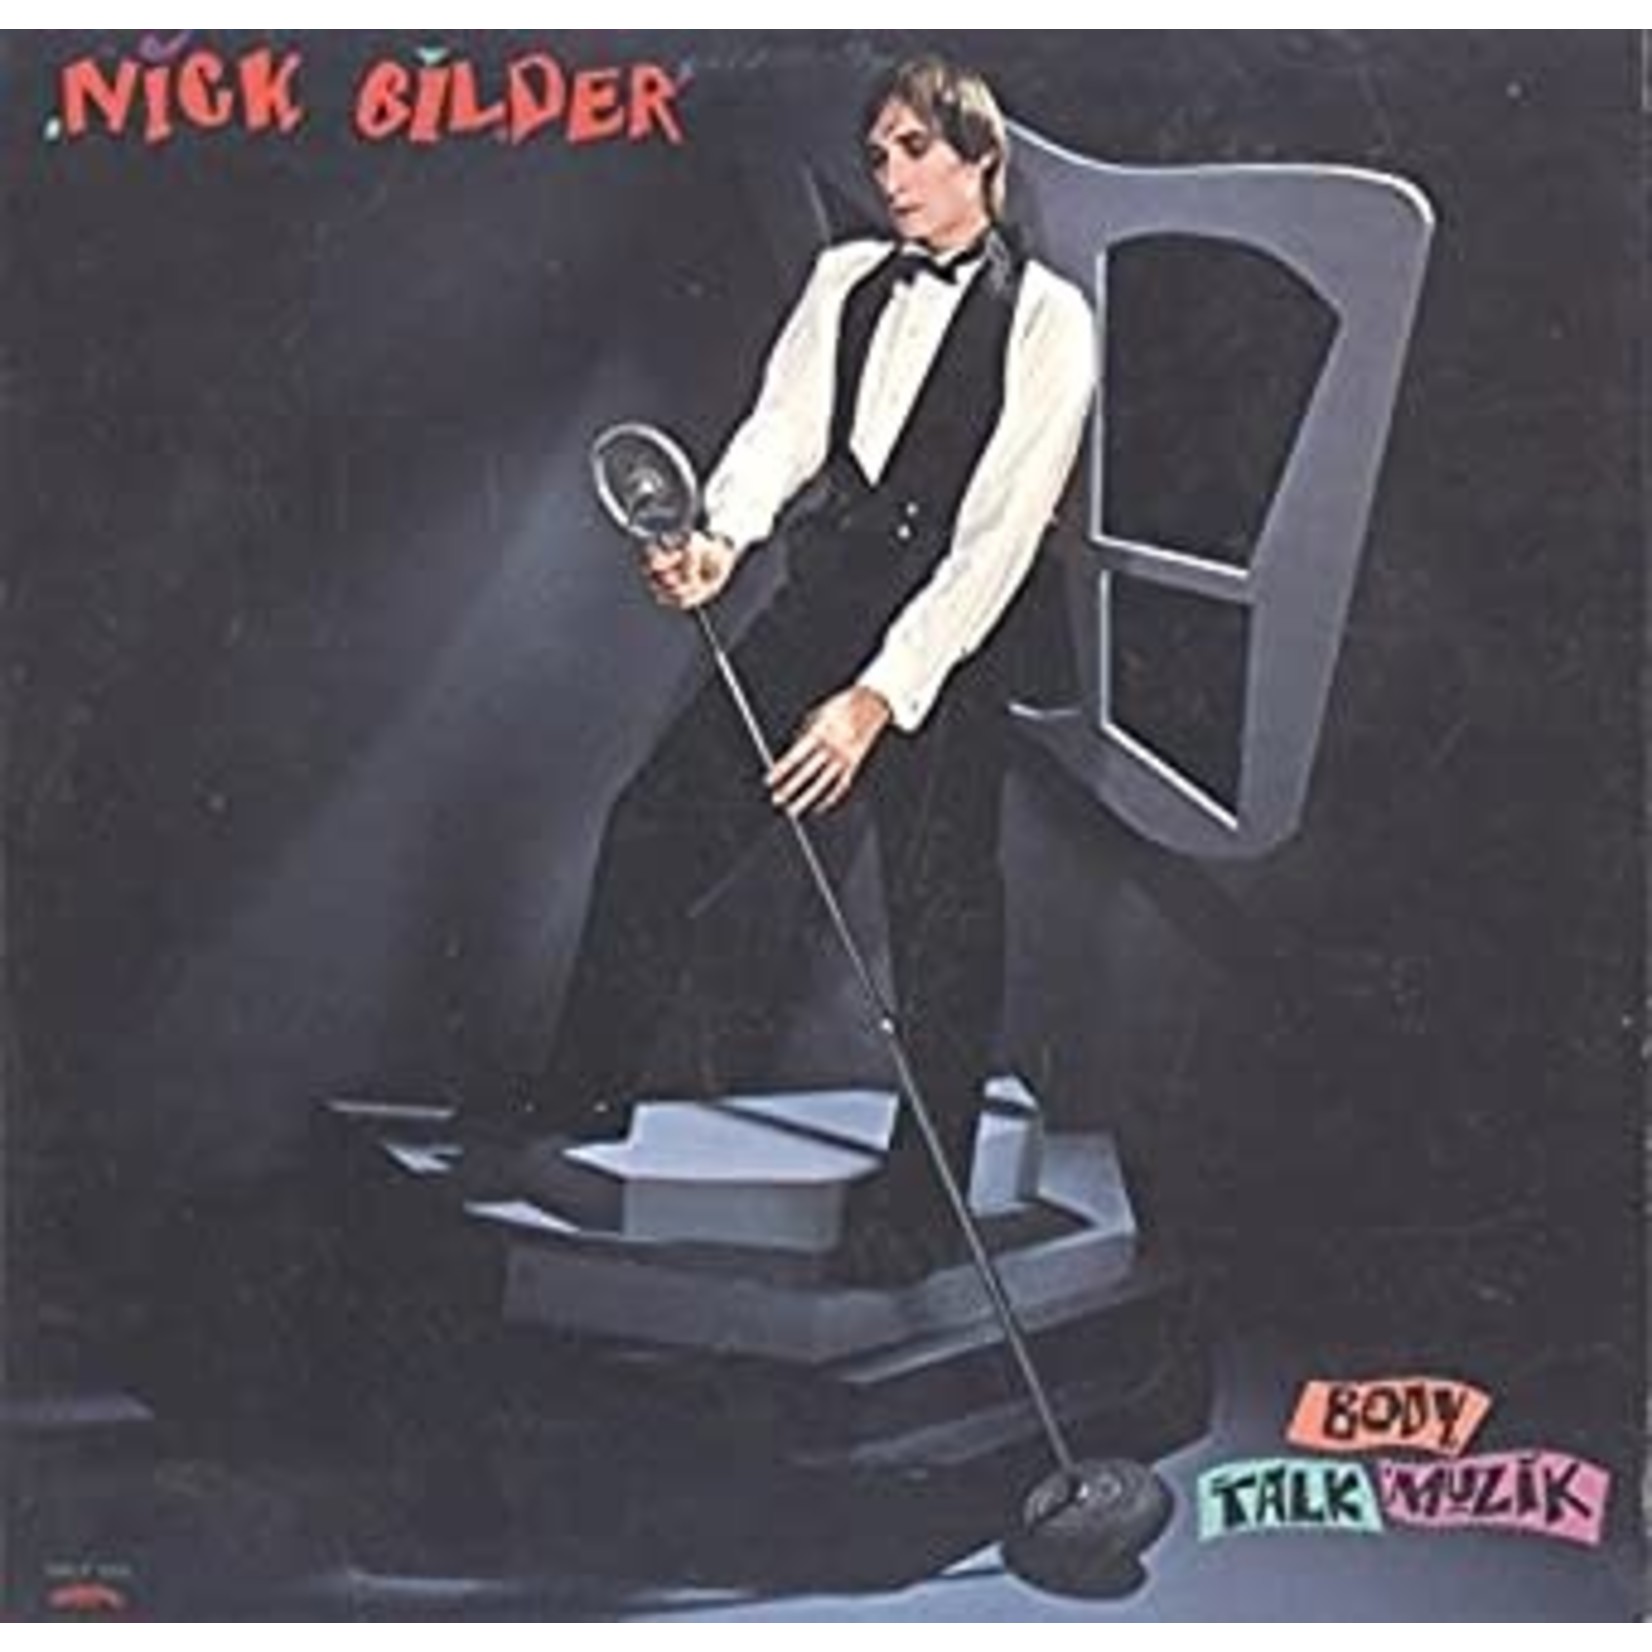 Glider, Nick: Body Talk Muzik